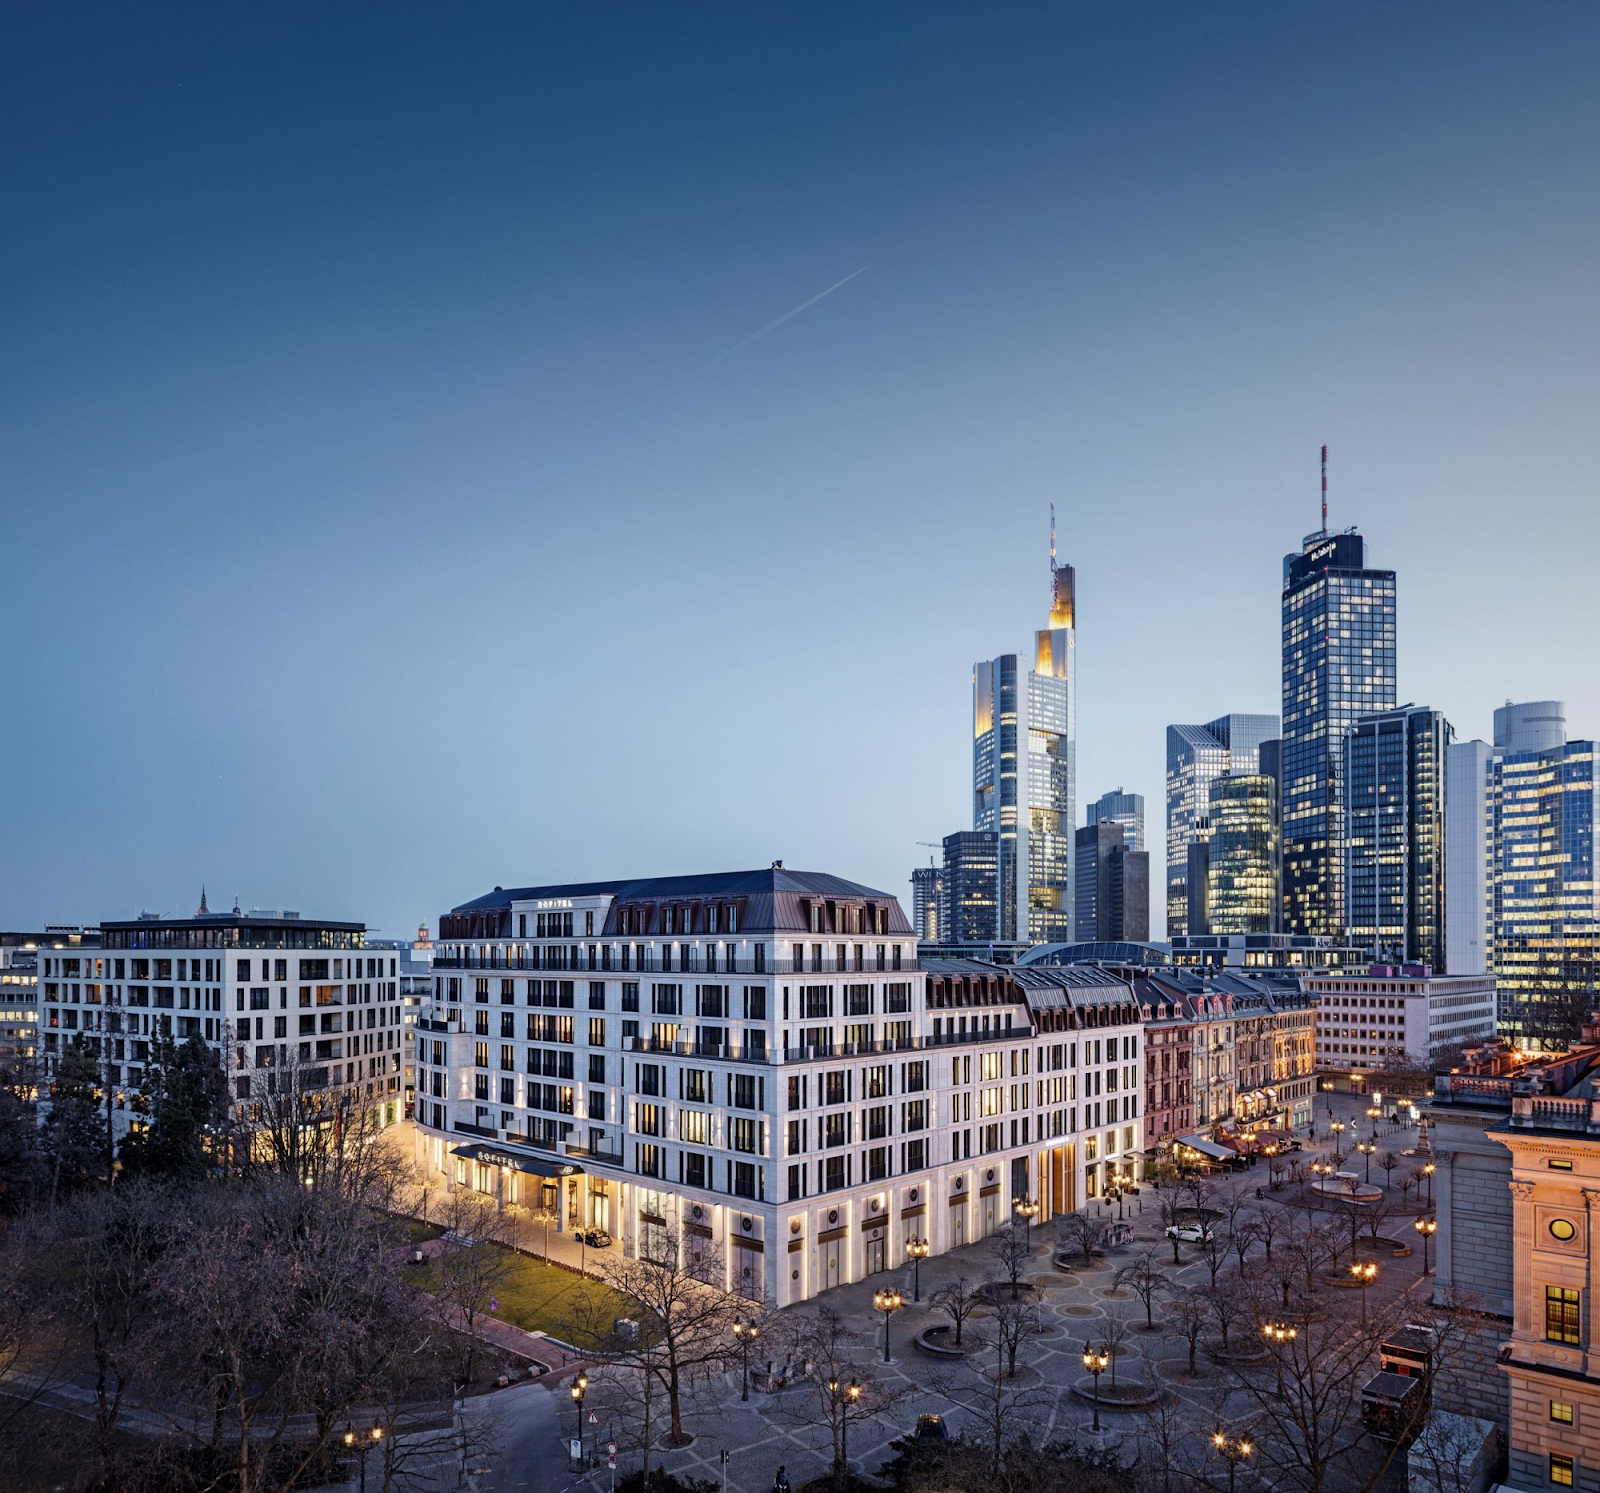 Das breite Kultur- und Gastronomieangebot in Frankfurt macht die Stadt als Wohn- und Arbeitsort sehr attraktiv.